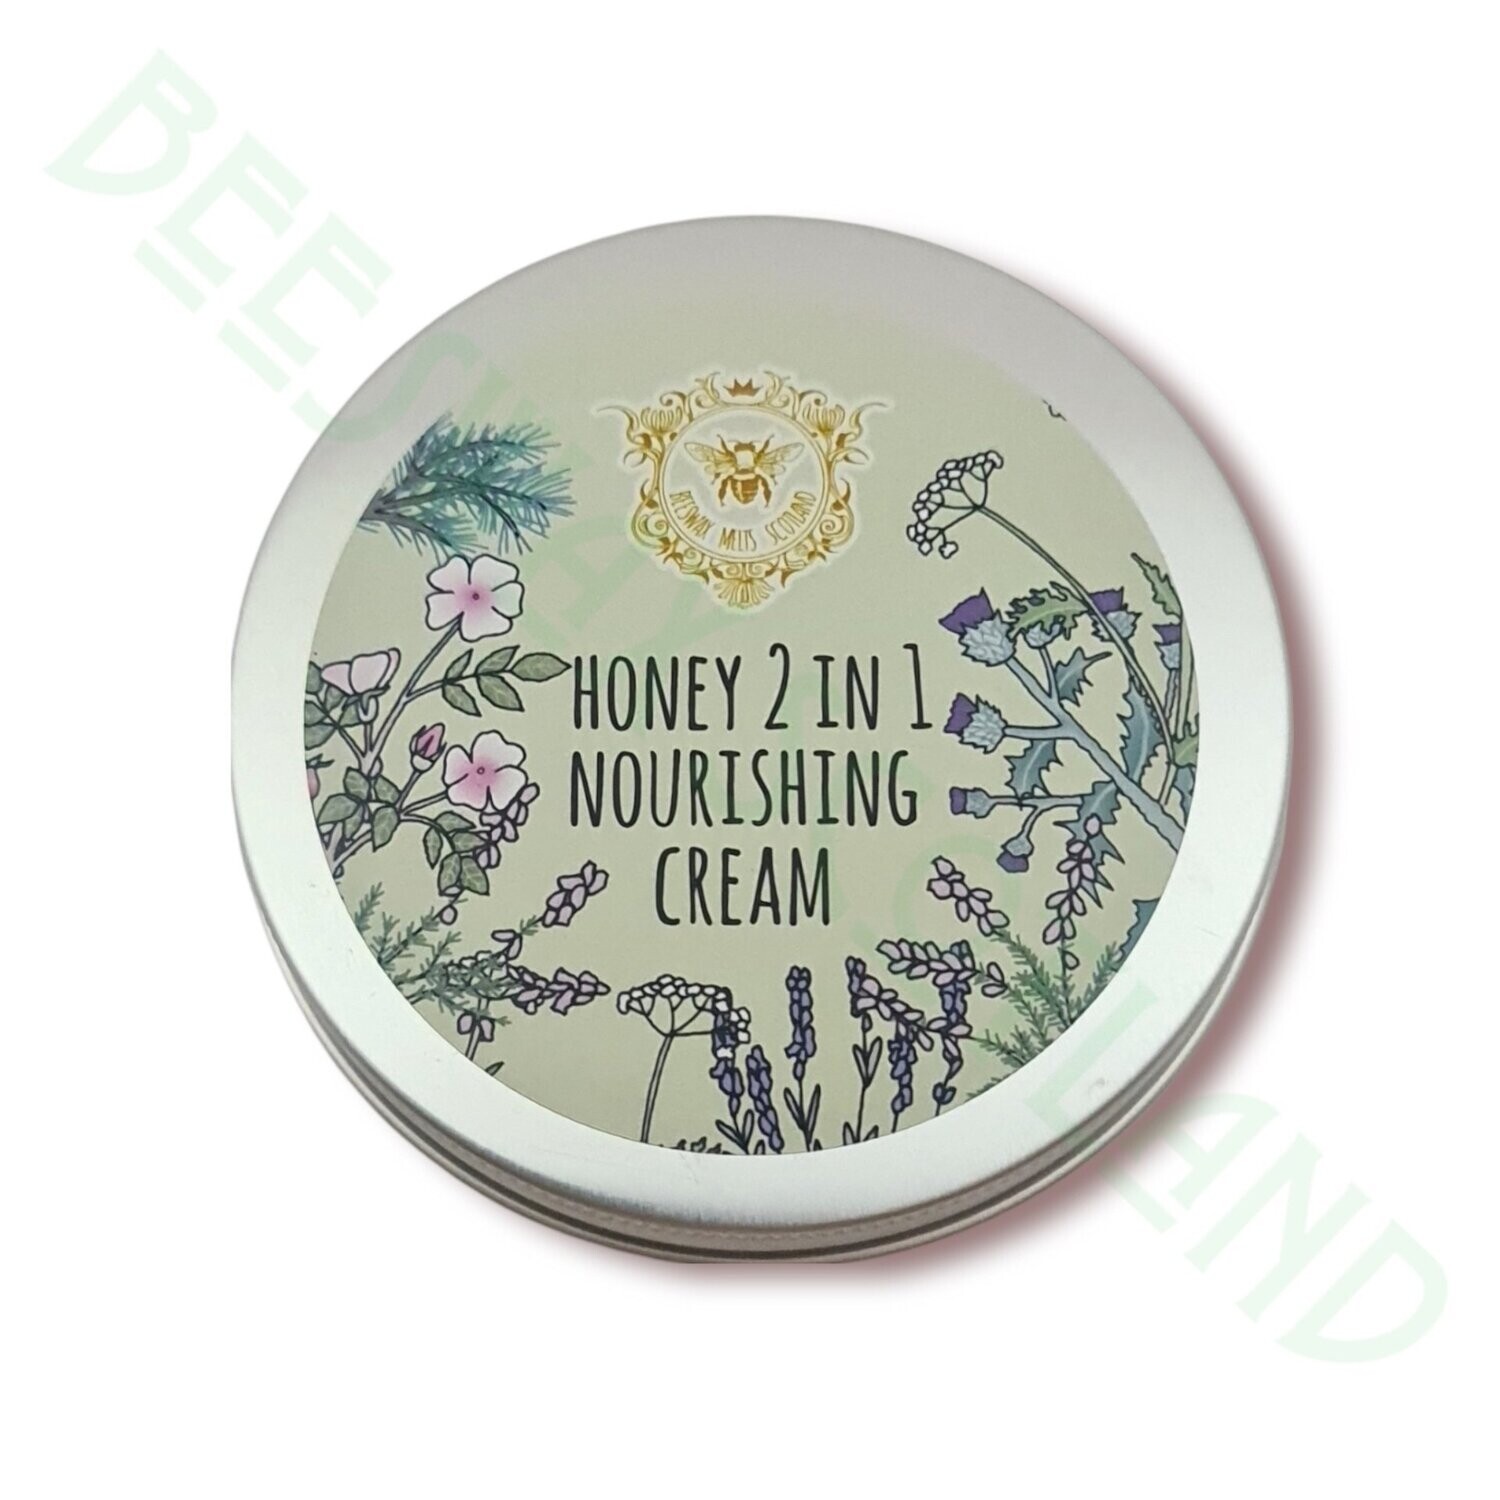 Honey 2 n 1 Nourishing Cream (100g)